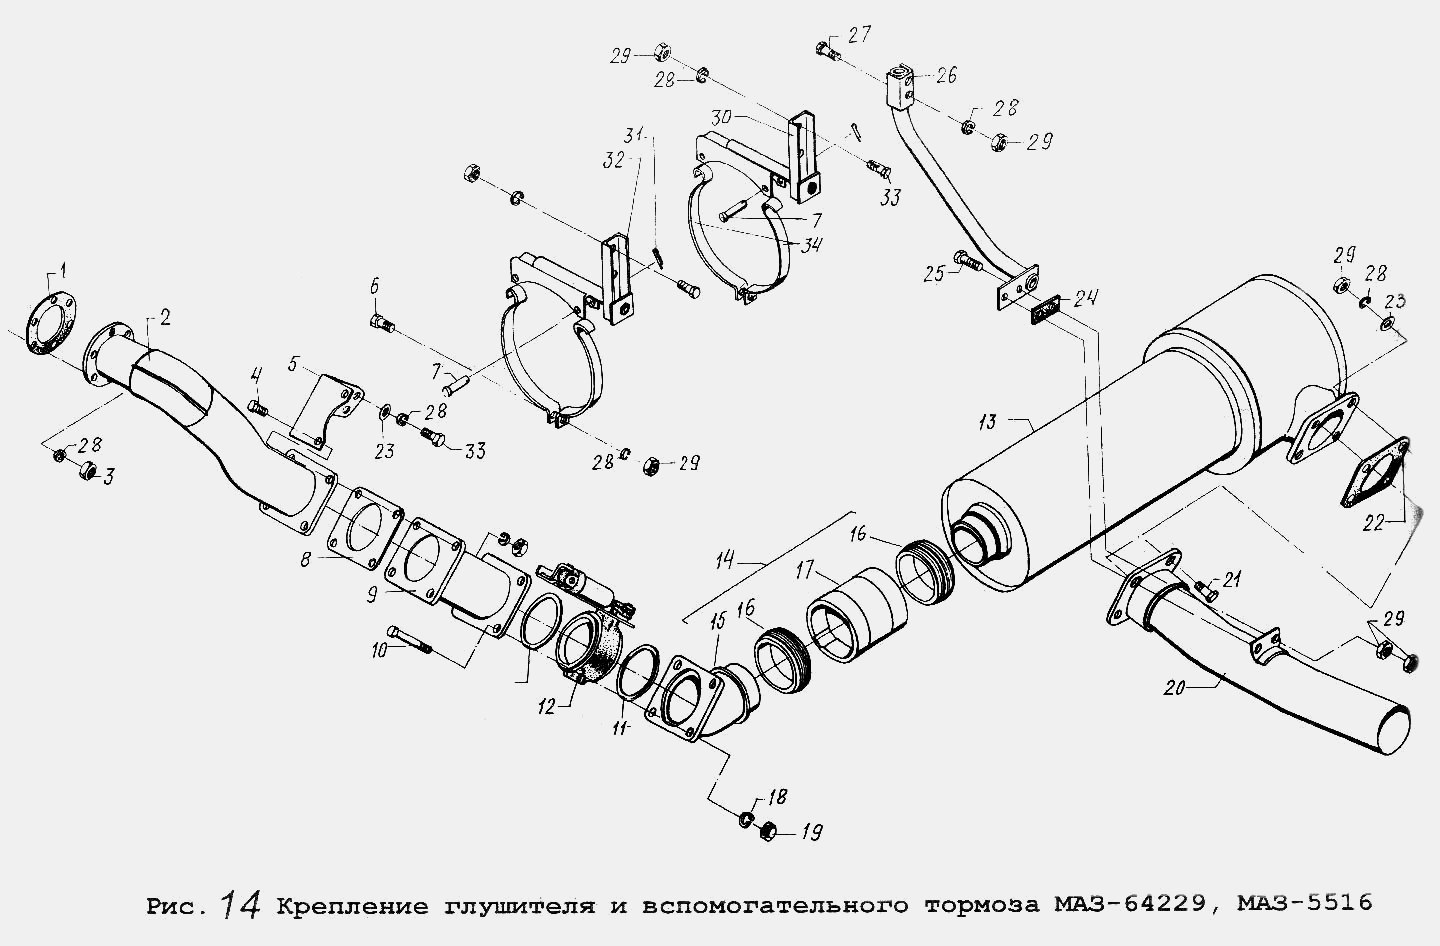 Крепление глушителя и вспомогательного тормоза МАЗ-64229, МАЗ-5516 МАЗ  5516